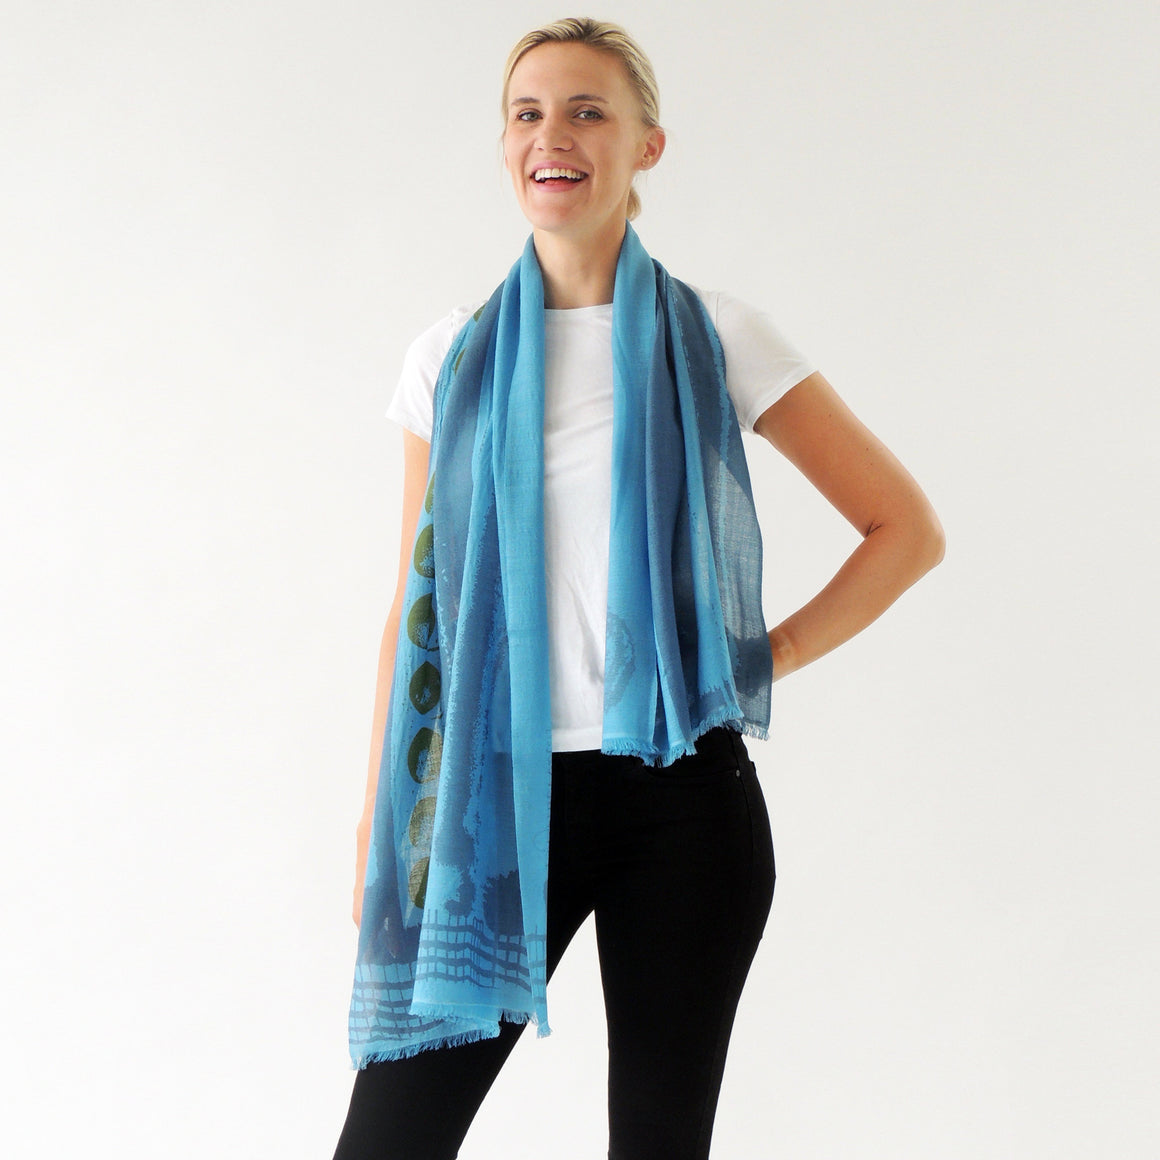 Merino small scarf luxury from PilgrimWaters 100% merino made in Nepal